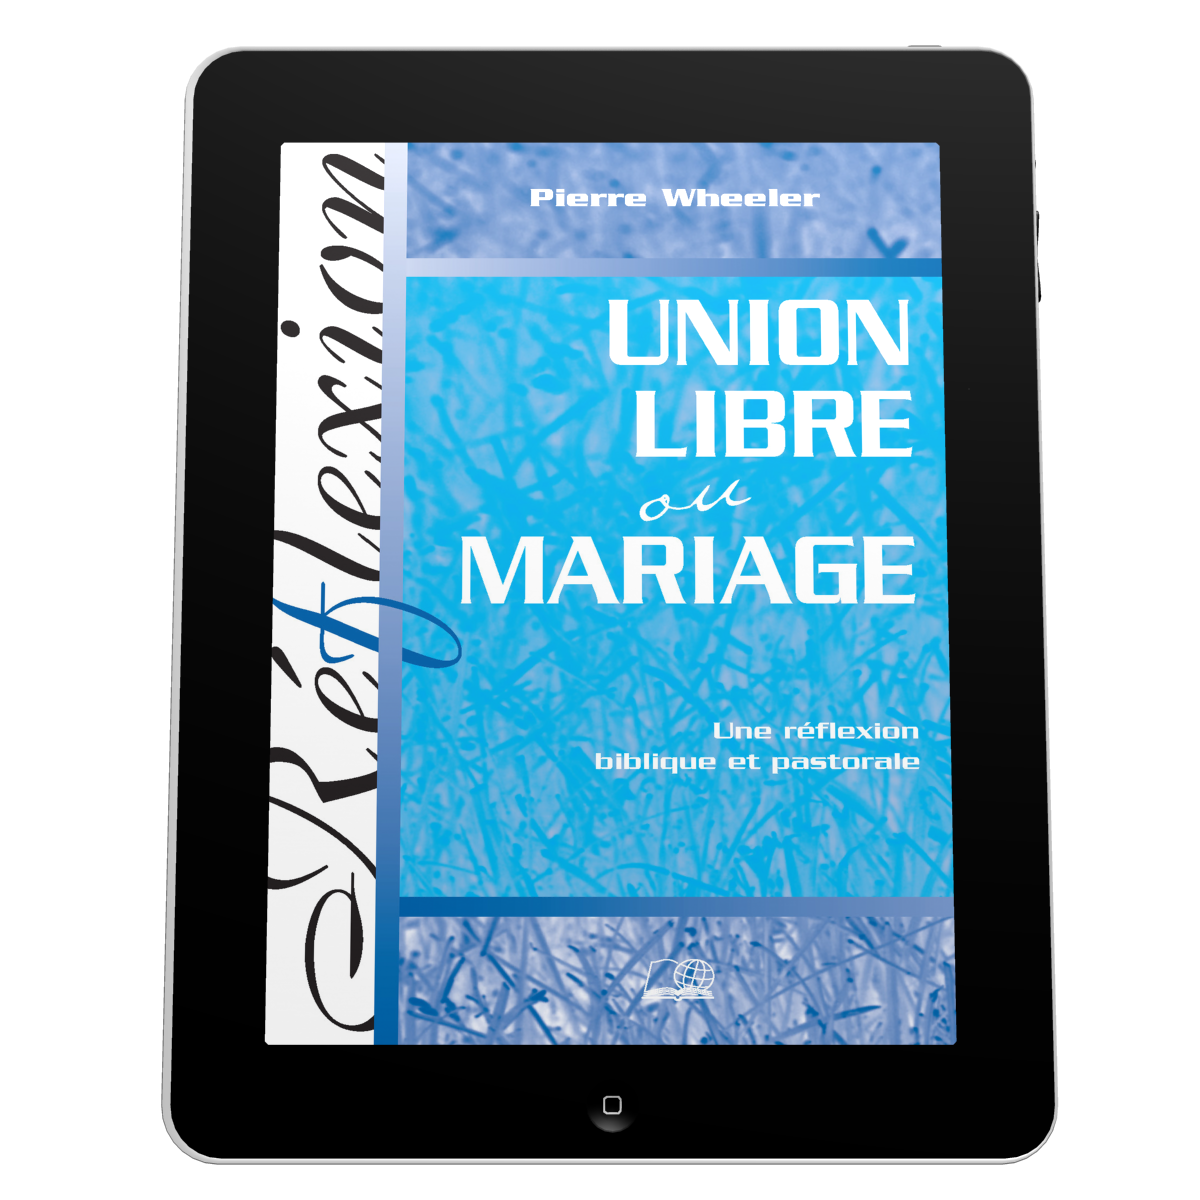 Union libre ou mariage - Une réflexion biblique et pastorale - ebook